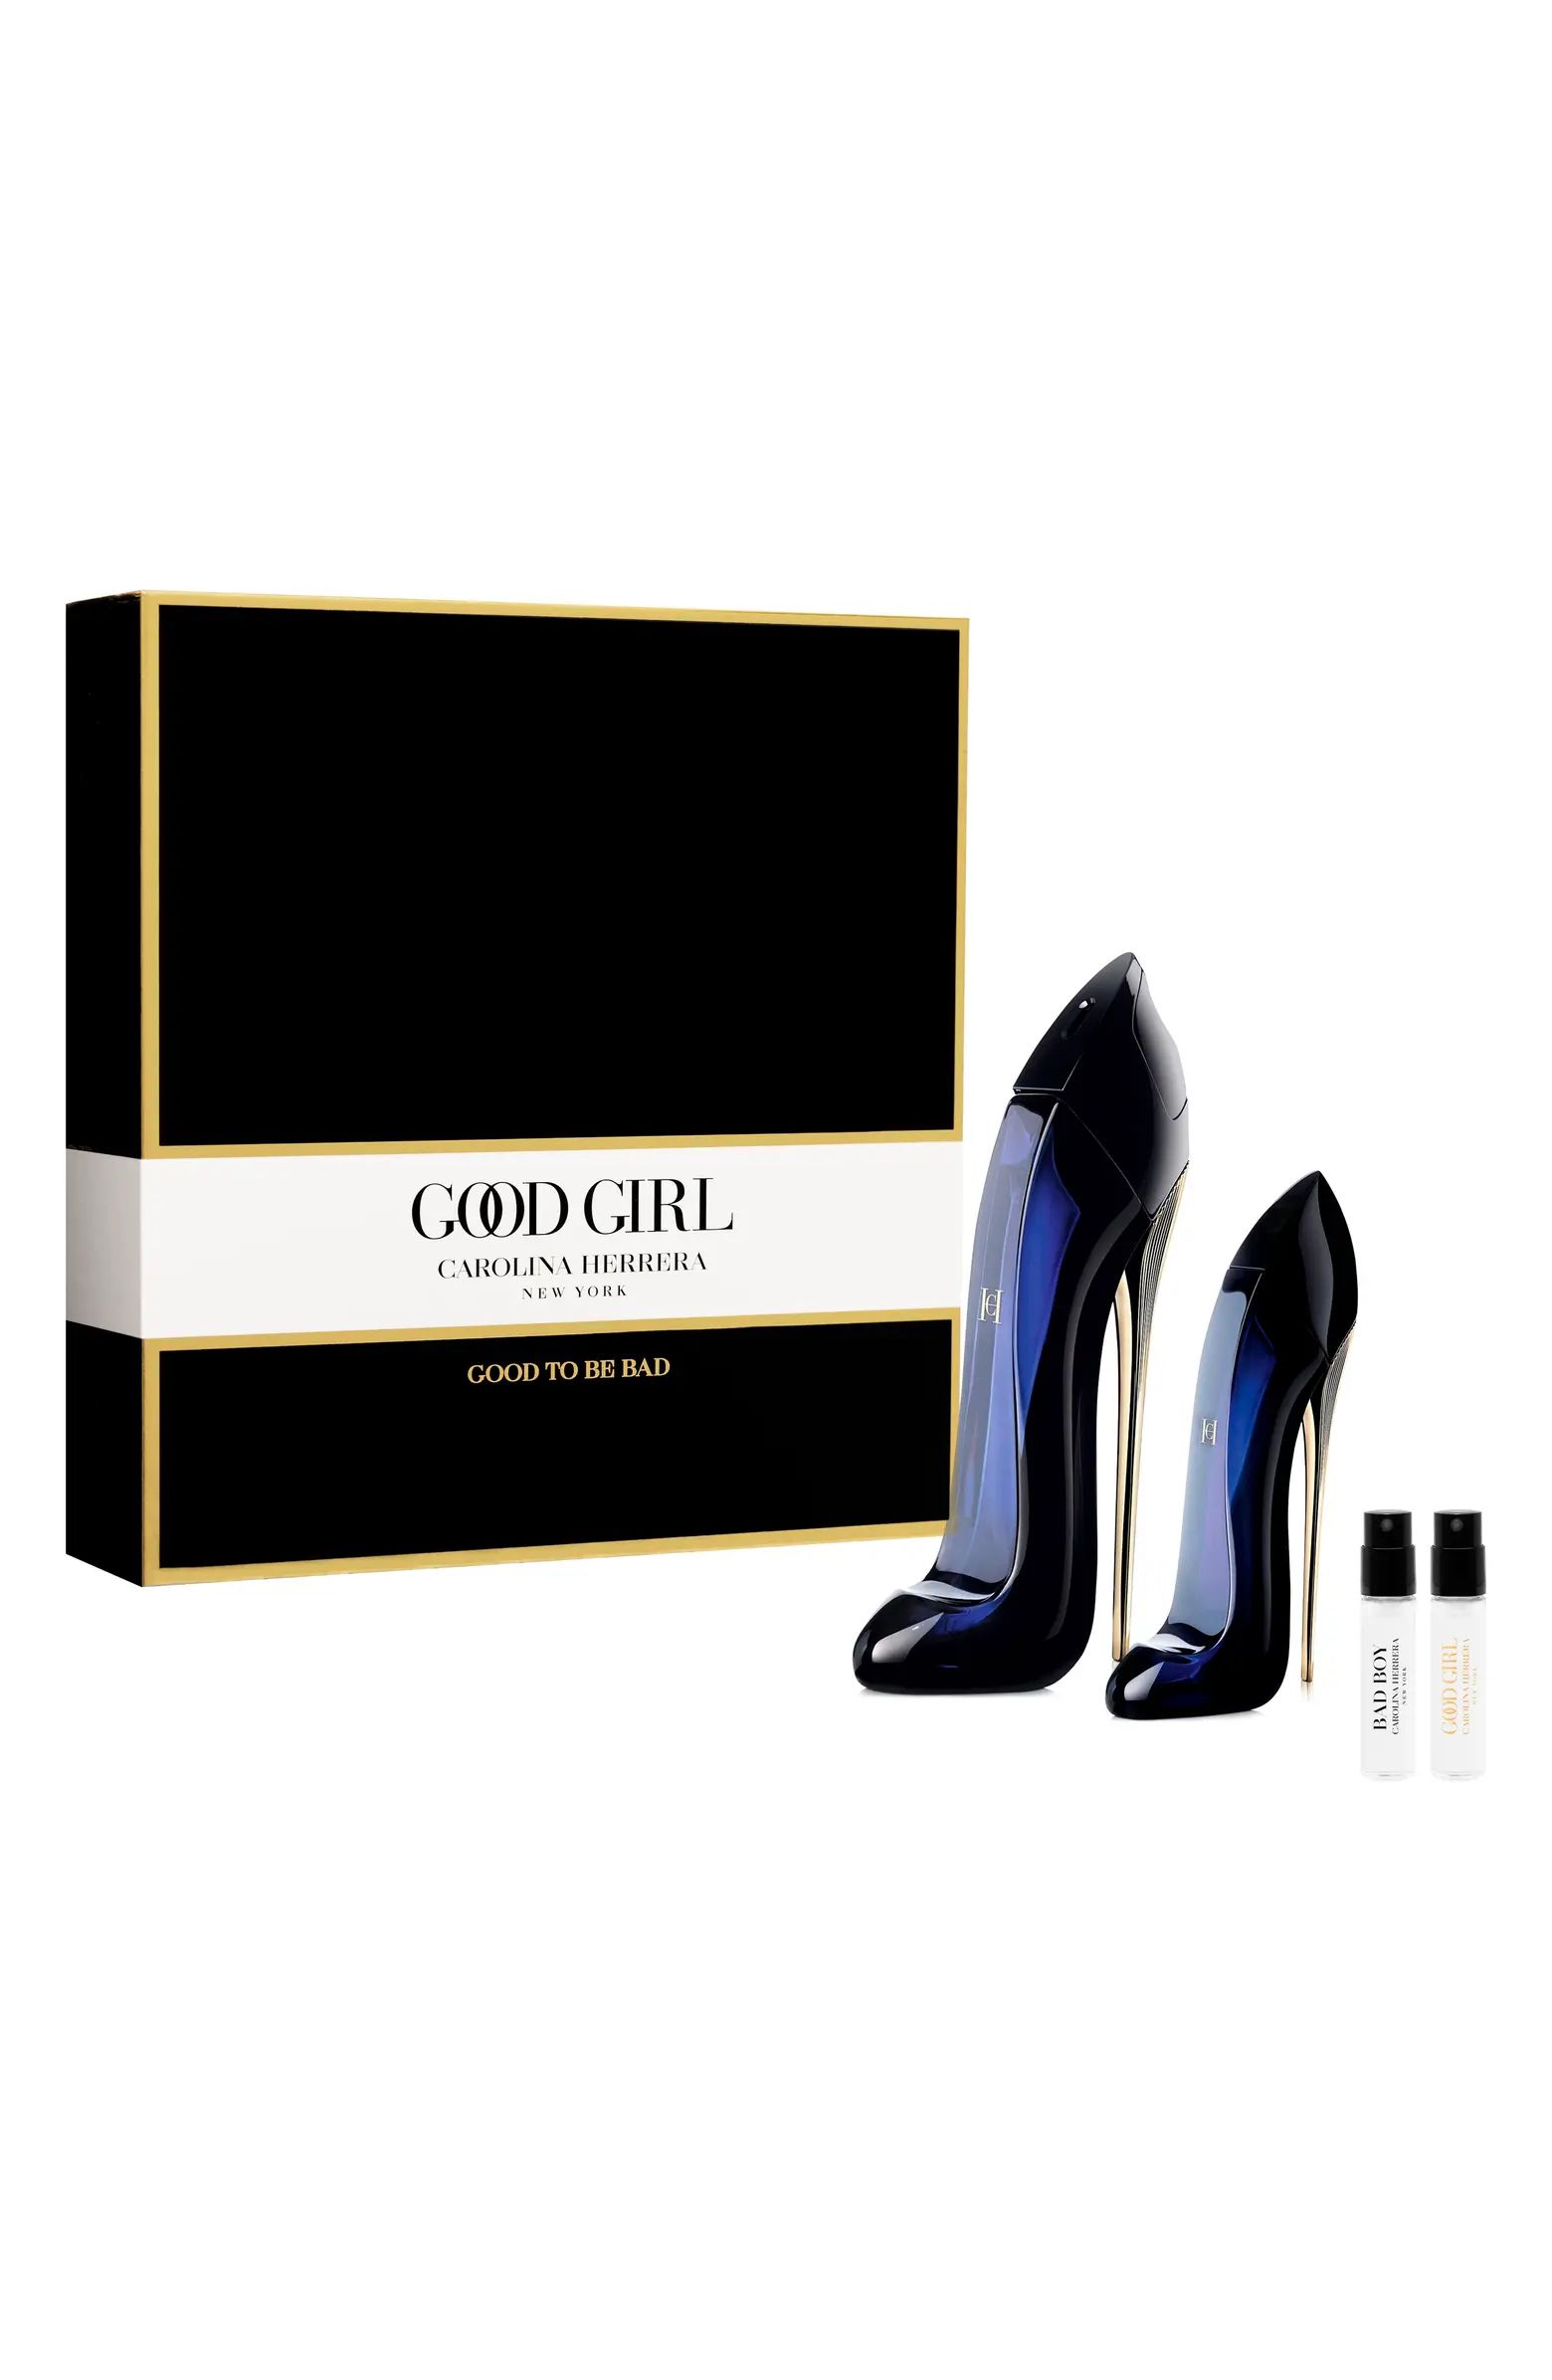 Carolina Herrera Good Girl Eau de Parfum Set USD $214 Value | Nordstrom | Nordstrom